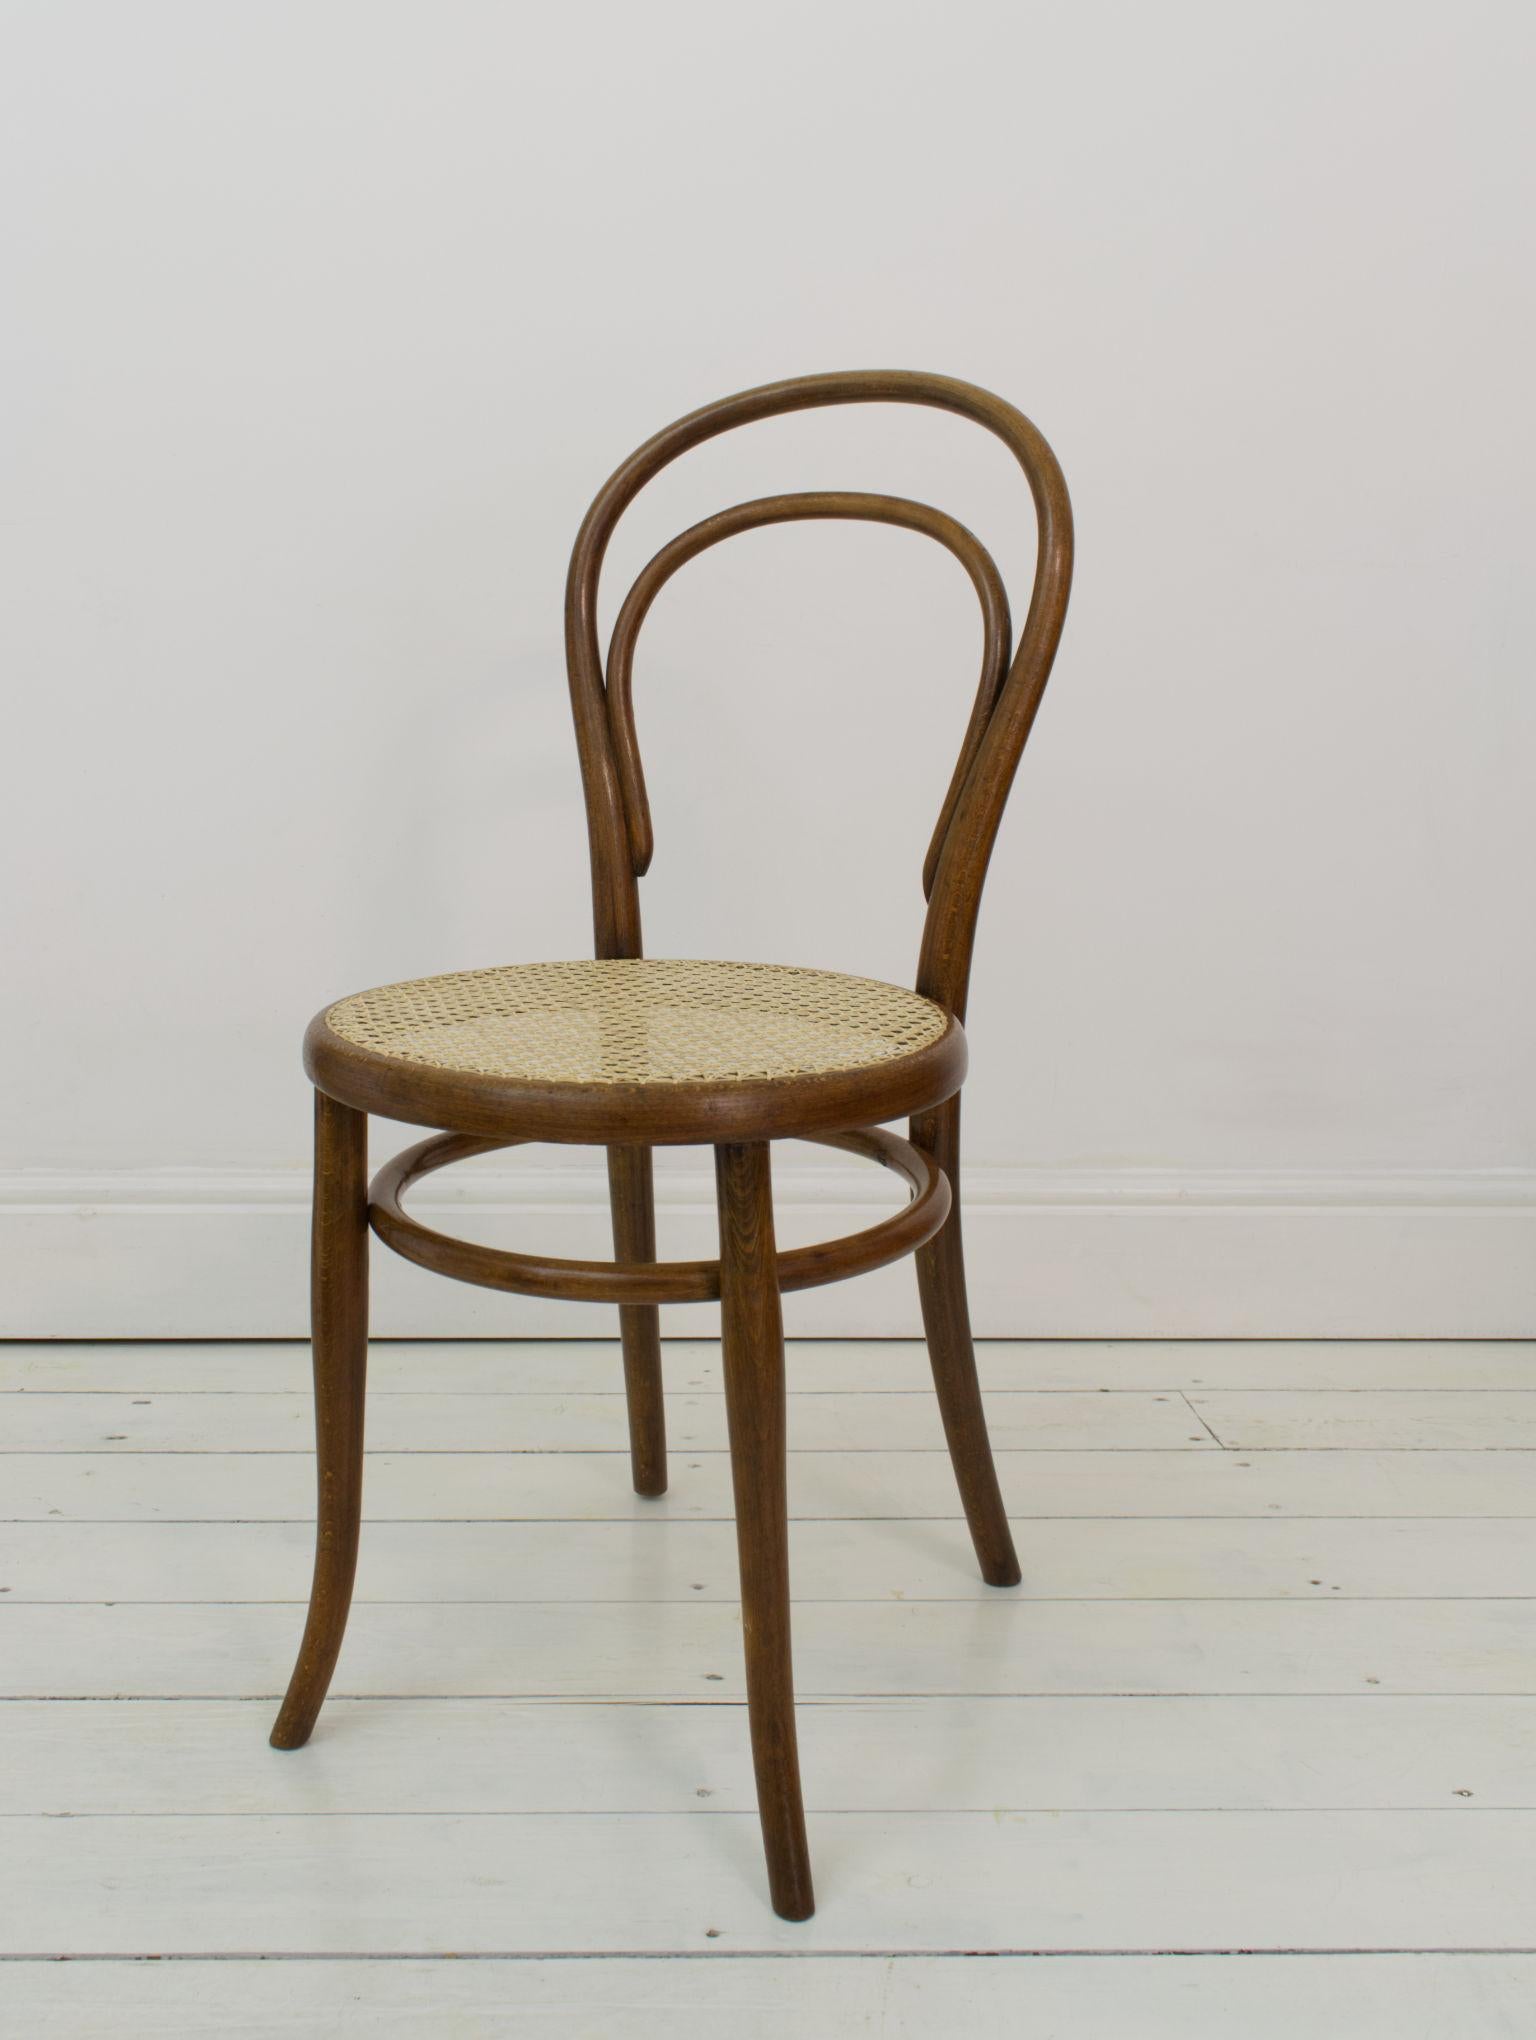 Un exemple précoce de la chaise la plus célèbre de Thonet, avec un Label original la datant entre 1890-1910, ces chaises sont aussi mystérieusement marquées A.I.C. le long du dossier du siège, bien que nous n'ayons pas été en mesure de déchiffrer